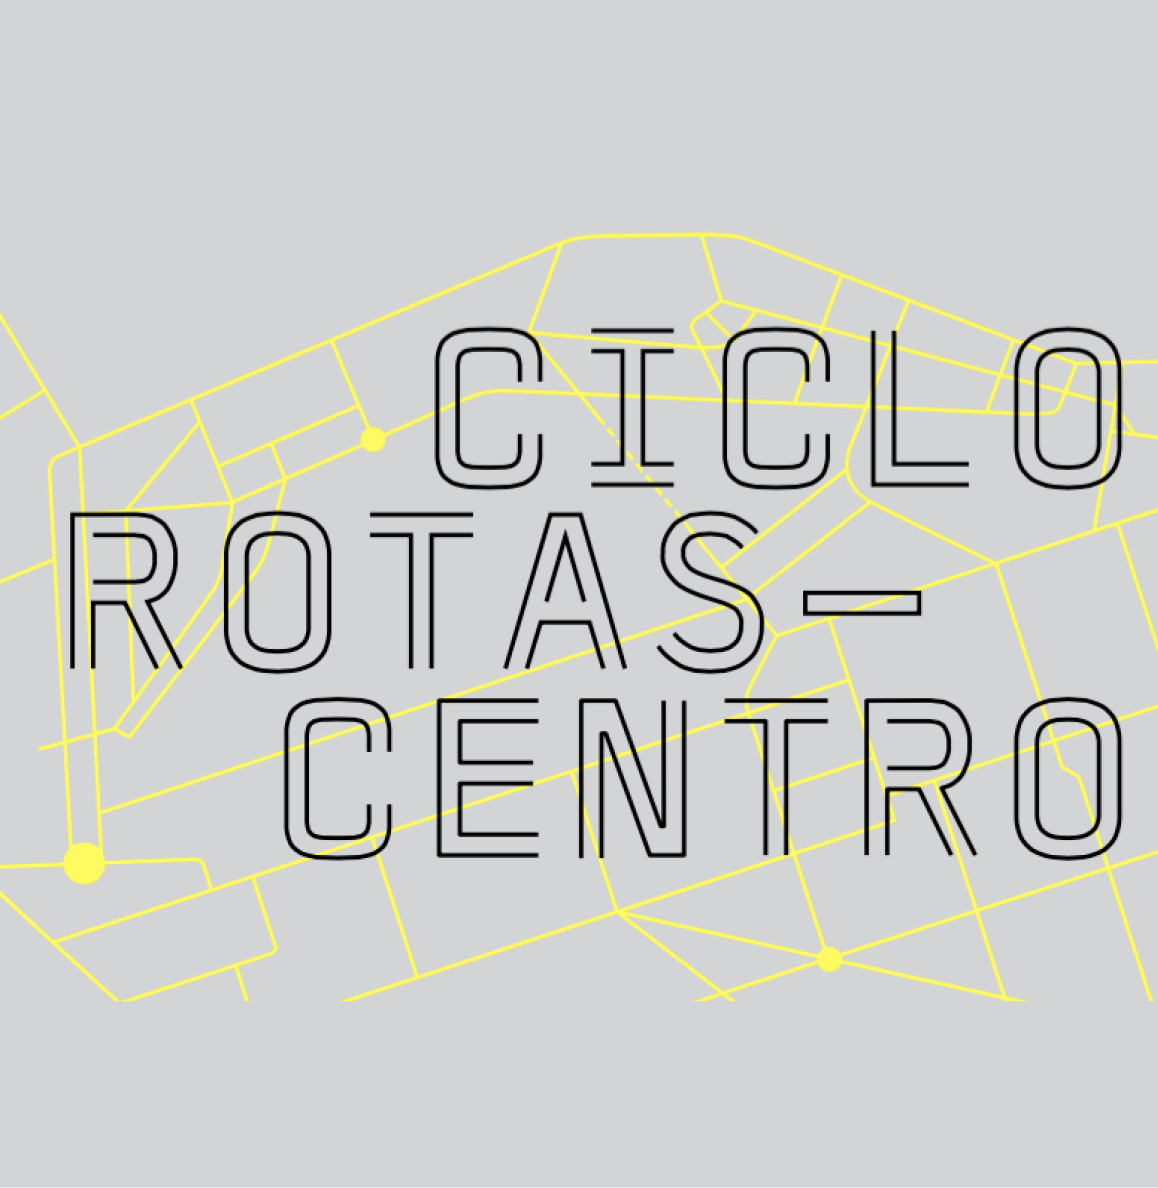 Ciclo Rotas Centro será um dos projetos brasileiros na Bienal de Arquitetura de Veneza